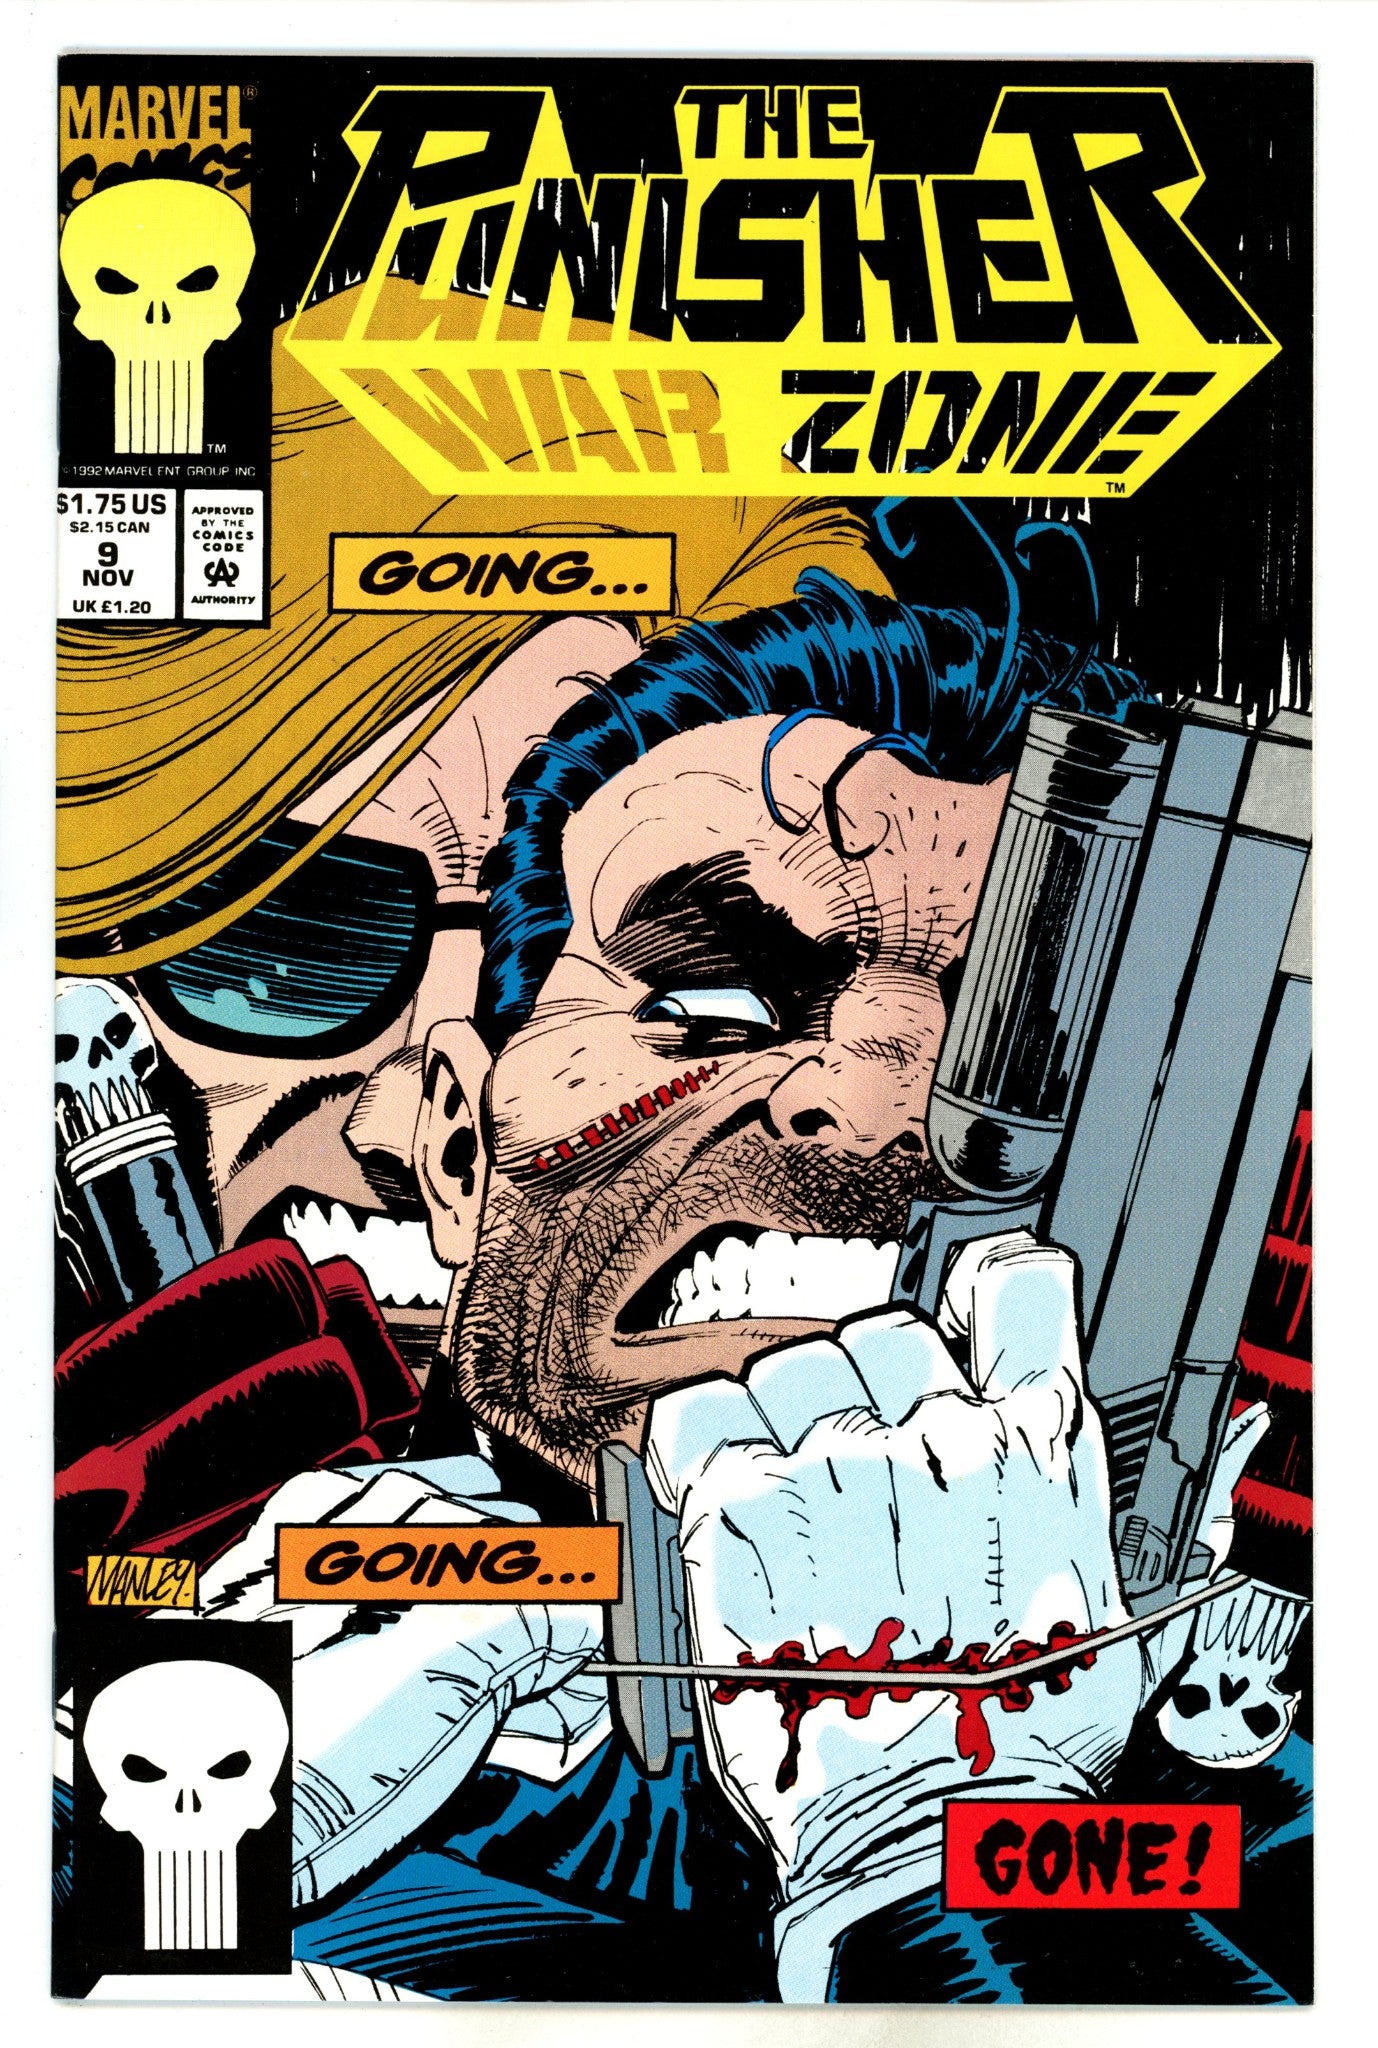 The Punisher: War Zone Vol 1 9